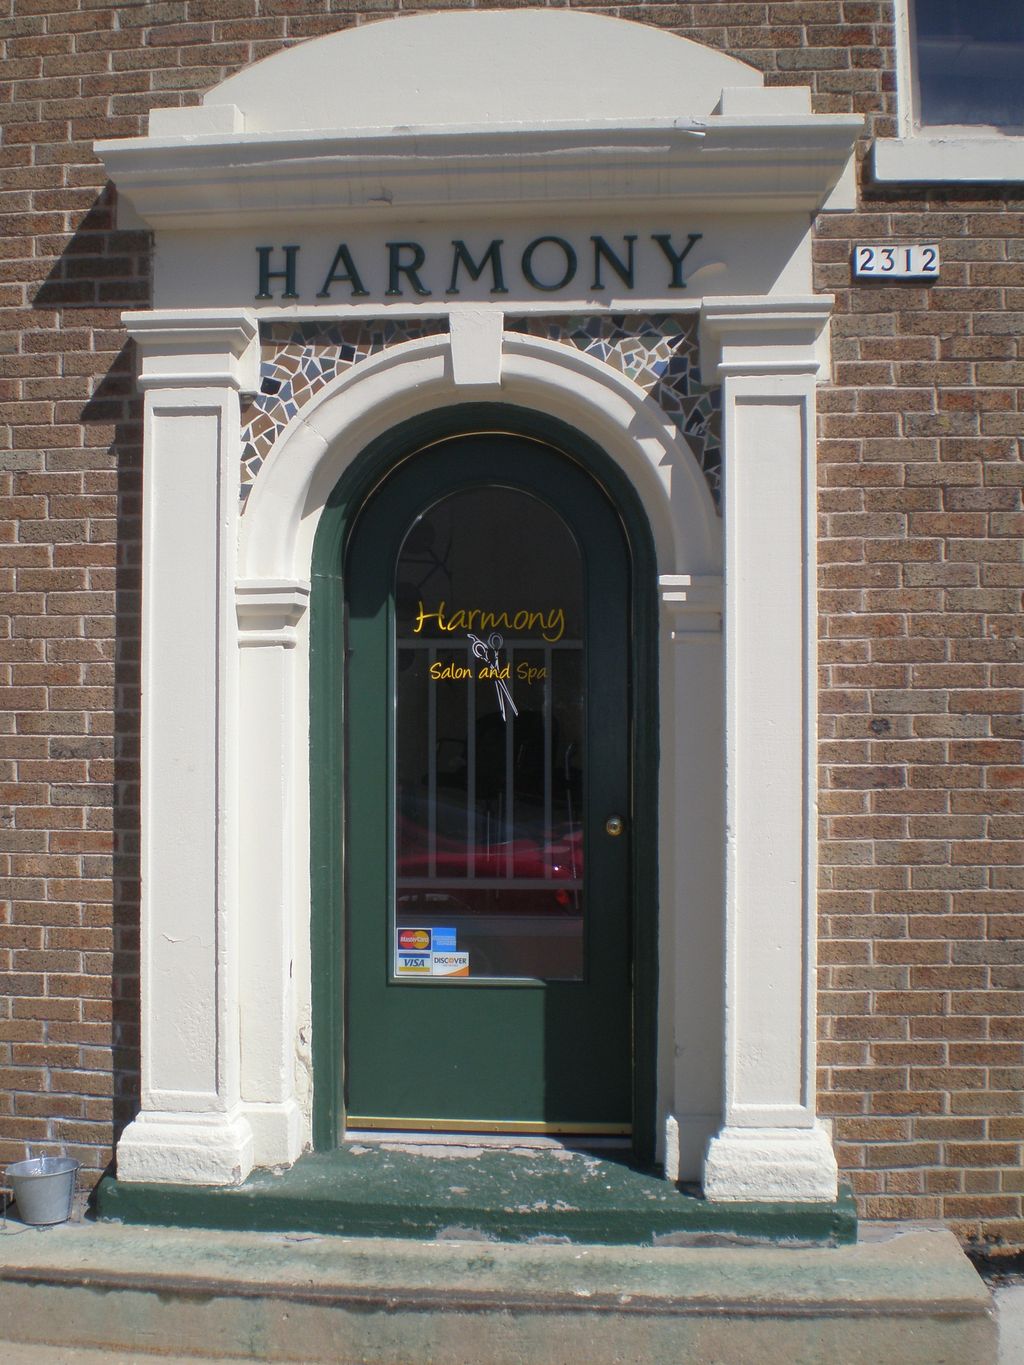 Harmony Salon & Spa